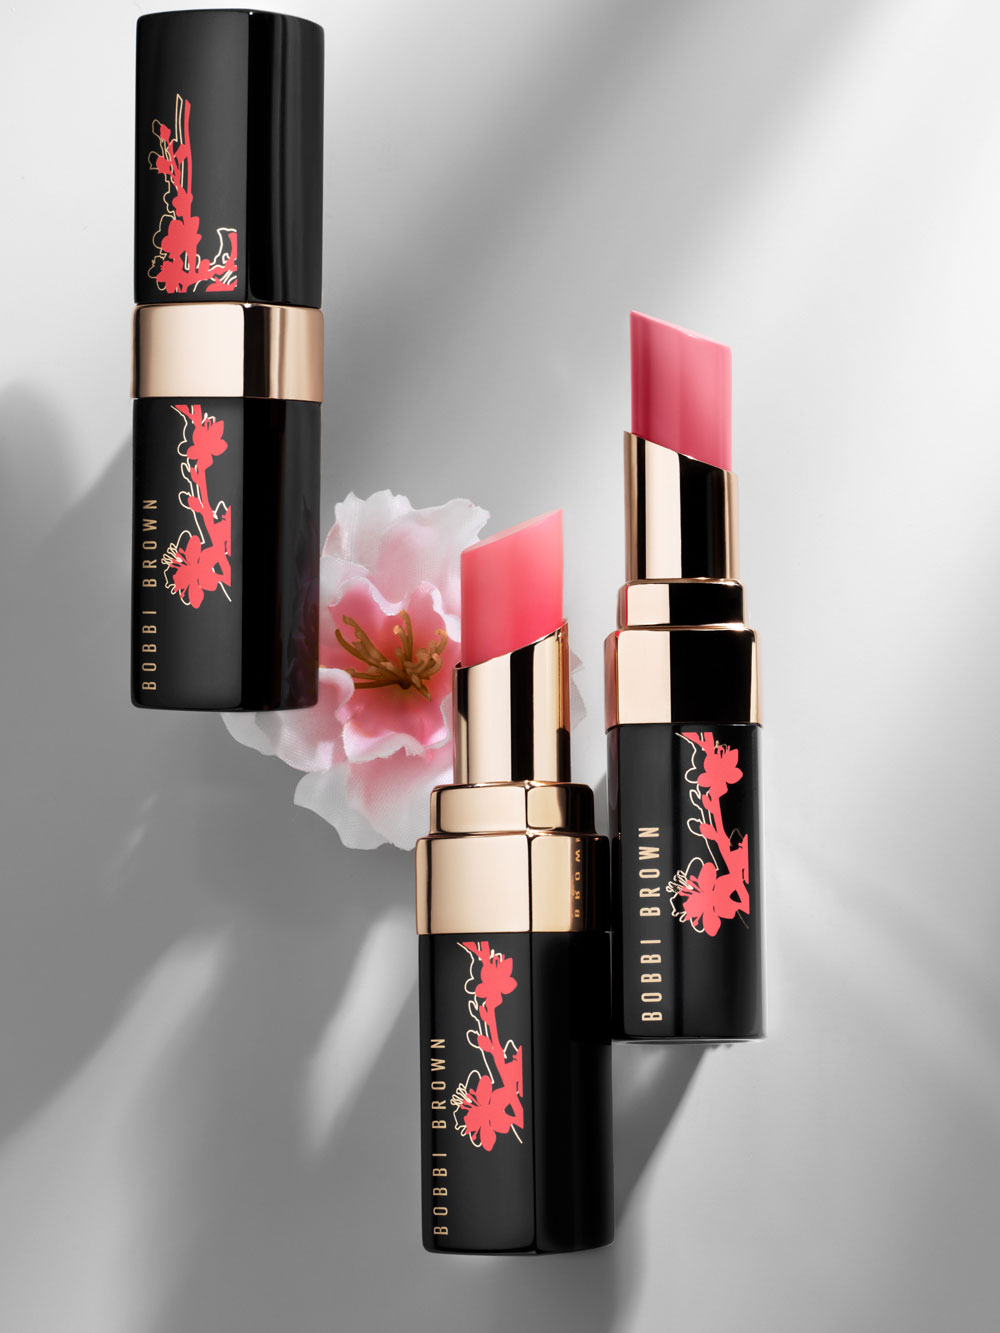 Die Bobbi Brown Glow & Blossom Sakura Kollektion ist inspiriert von New York und überzeugt mit sanften Farben in Blütentönen. 